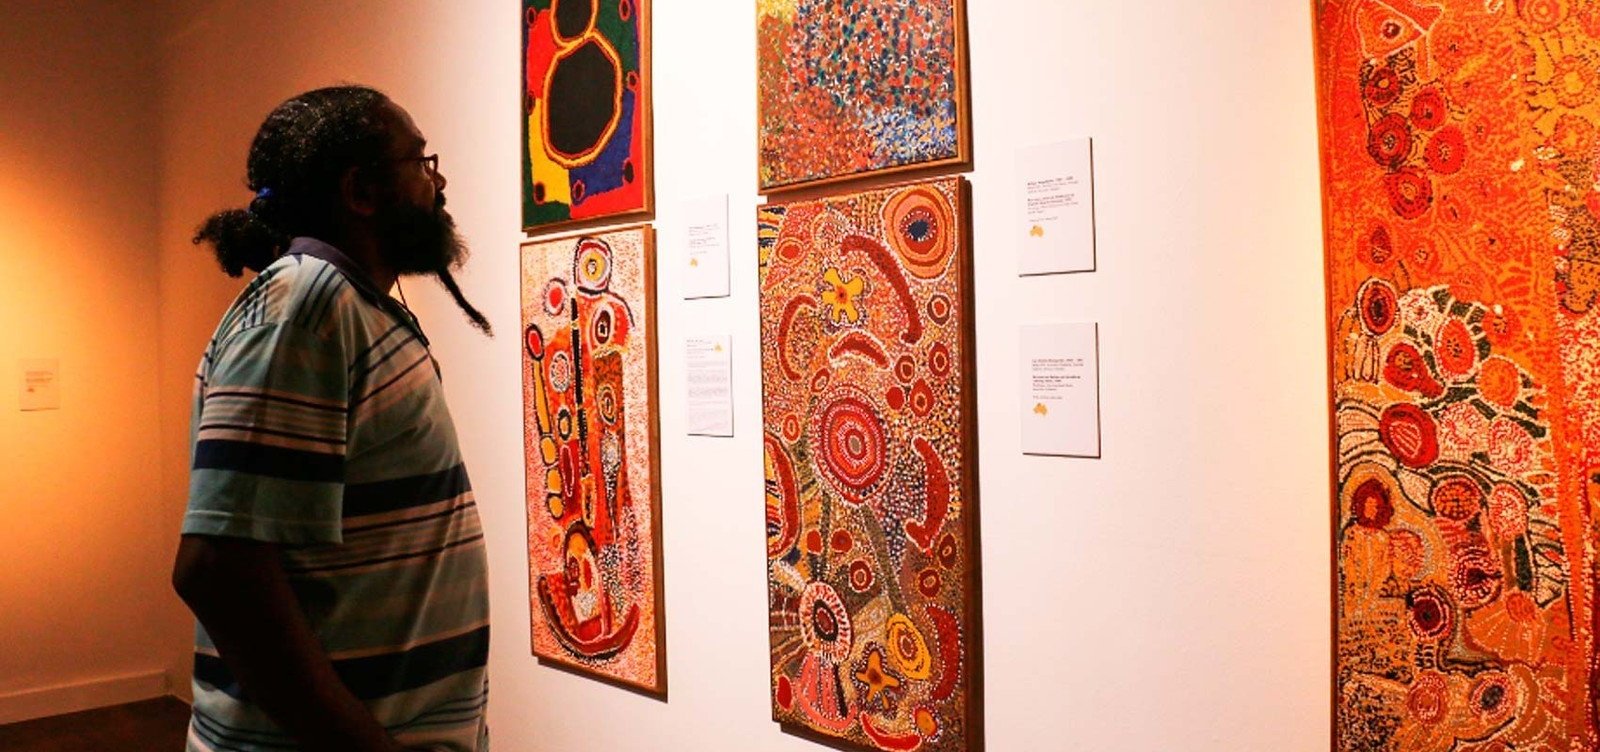 Caixa Cultural abre exposição de artistas aborígenes australianos 